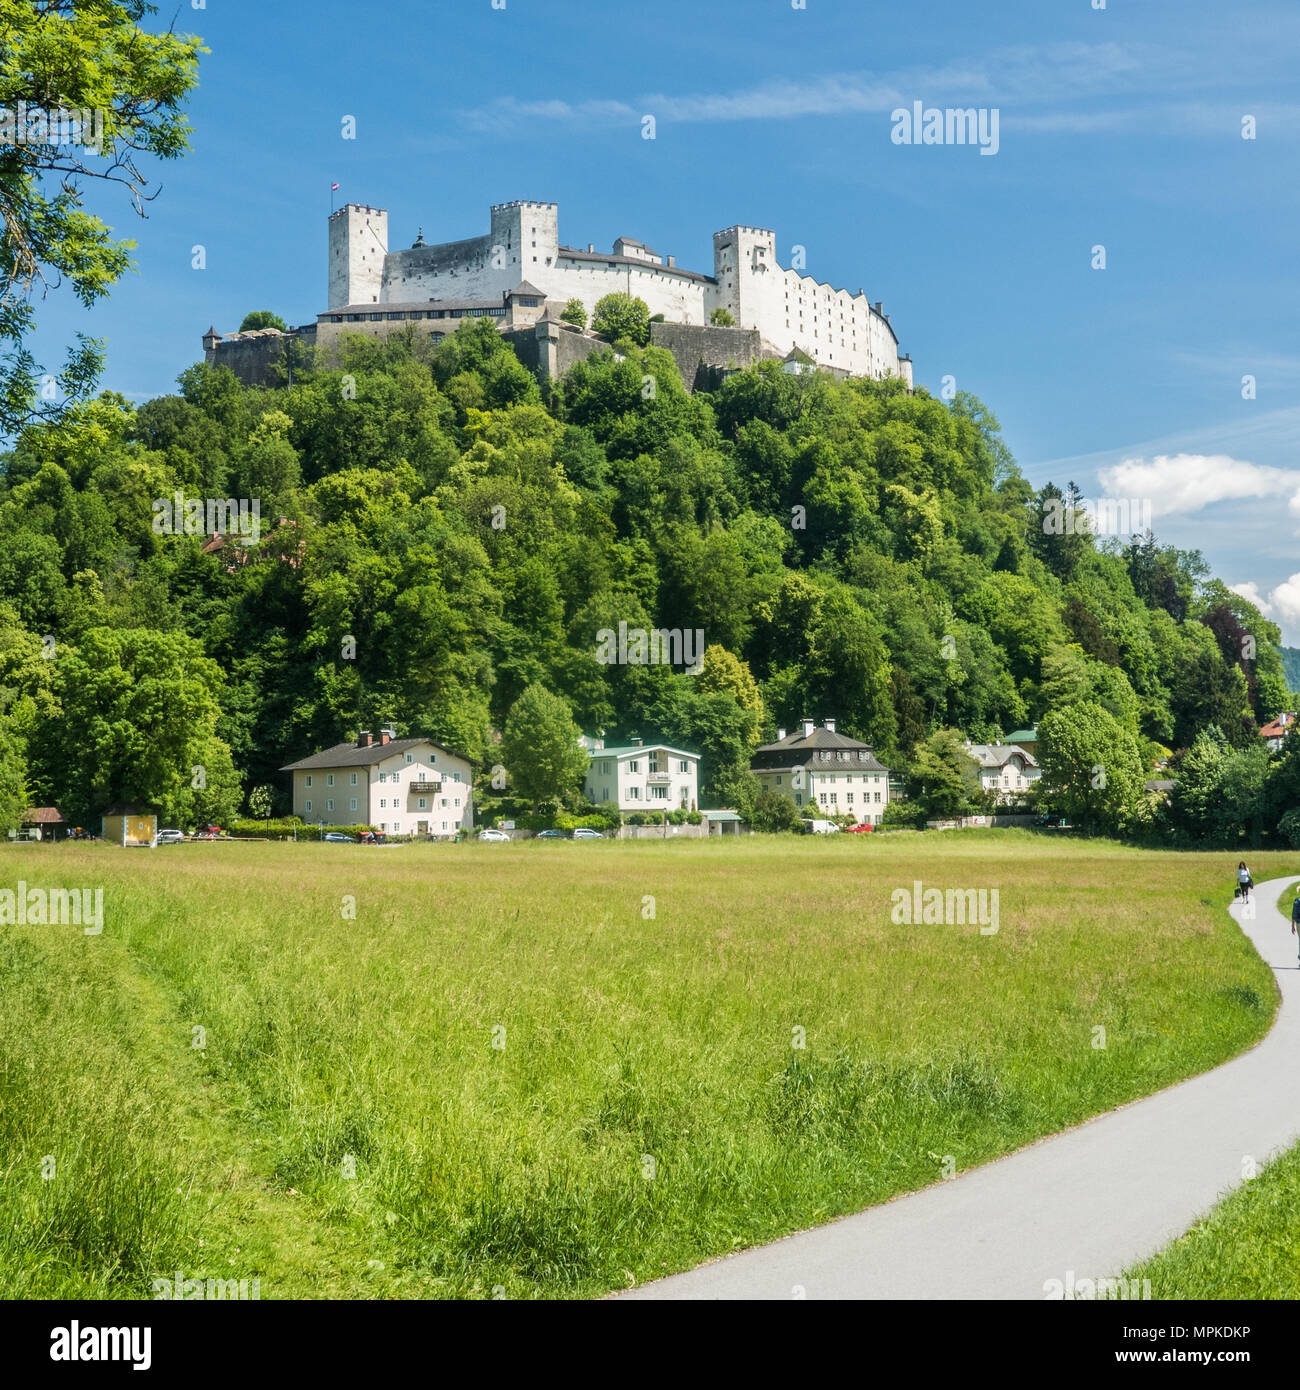 Mittelalterliche Festung Hohensalzburg sitzt auf Festungsberg Hügel in der Stadt Salzburg, Österreich. Stockfoto